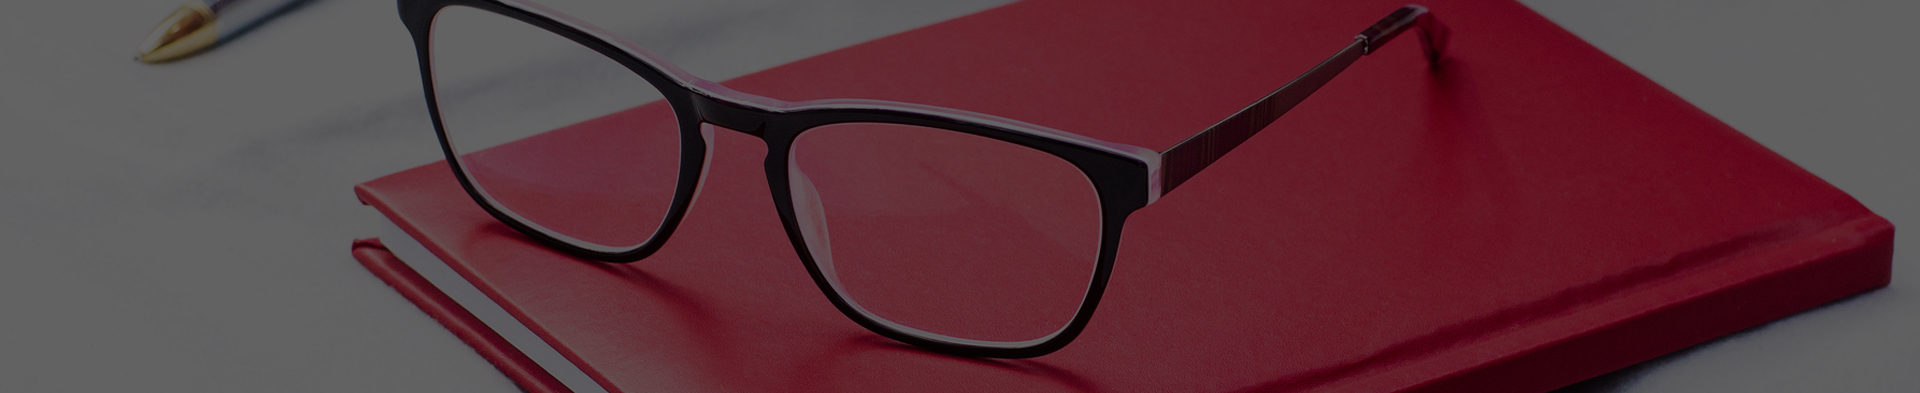 Jak vybrat multifokální brýlové čočky